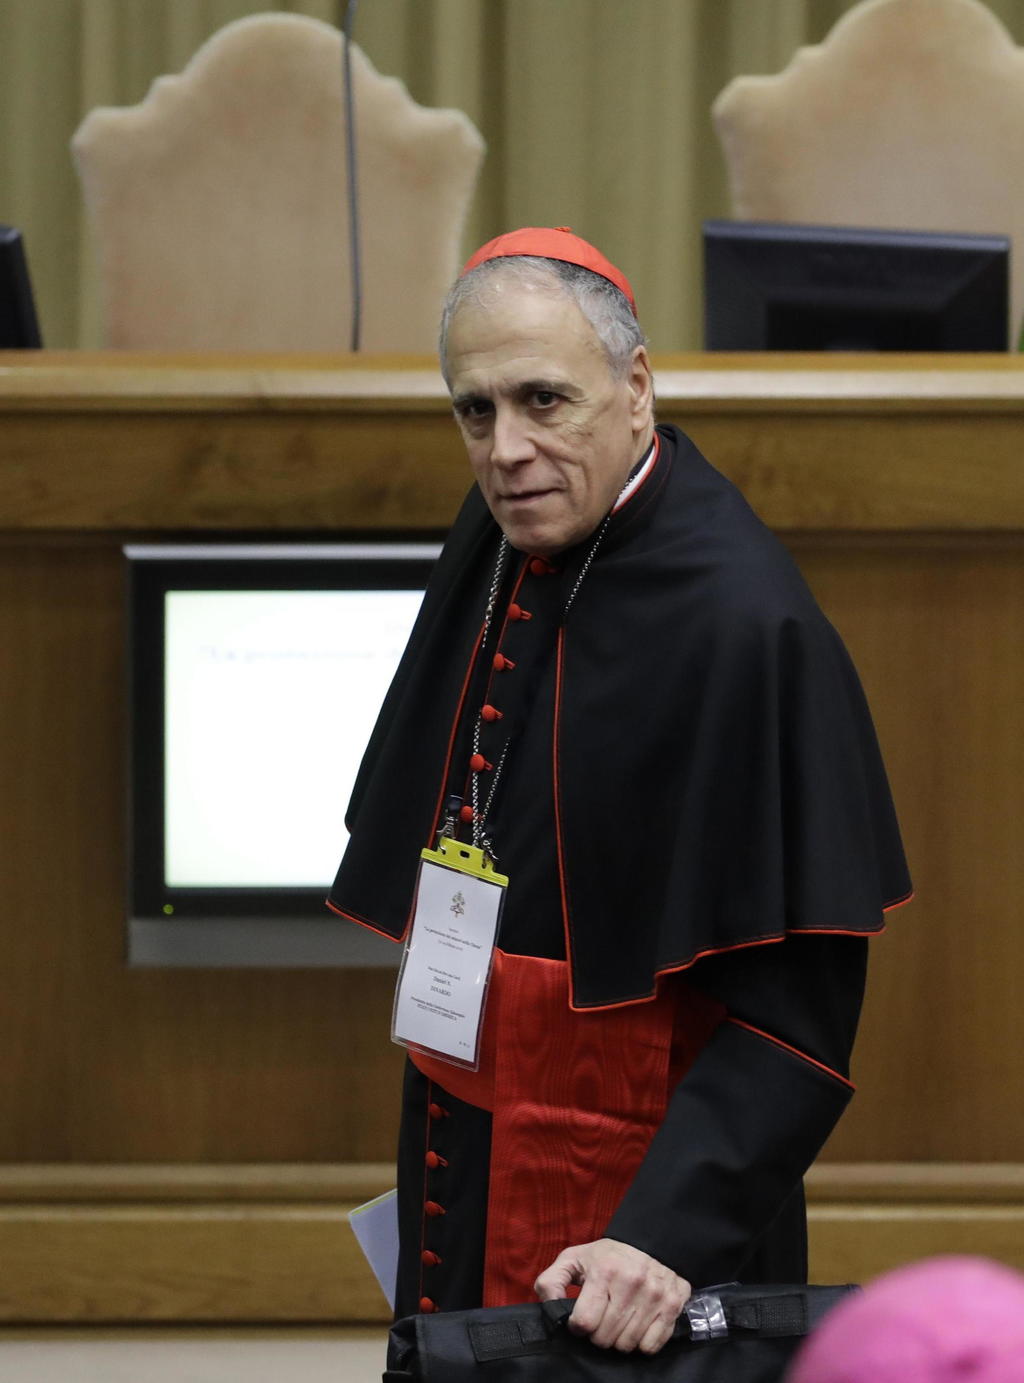 El cardenal es acusado de manejar mal un caso de abuso sexual. (ARCHIVO)